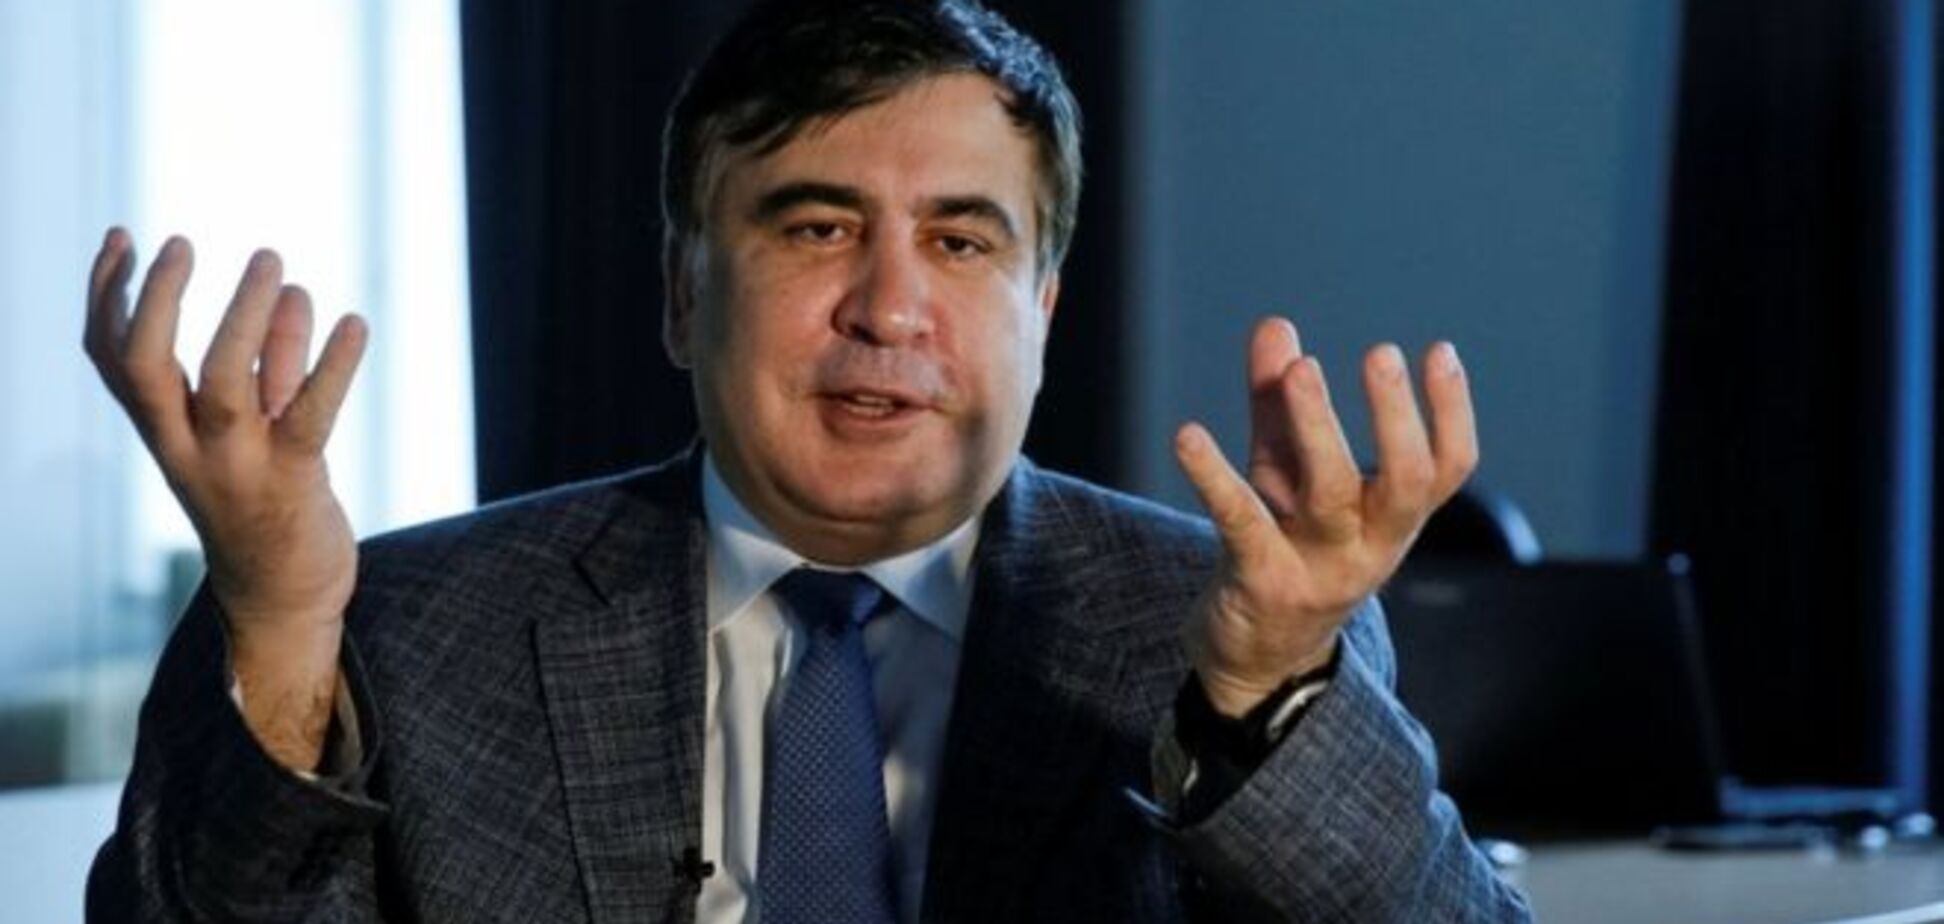 Пиррова победа Саакашвили